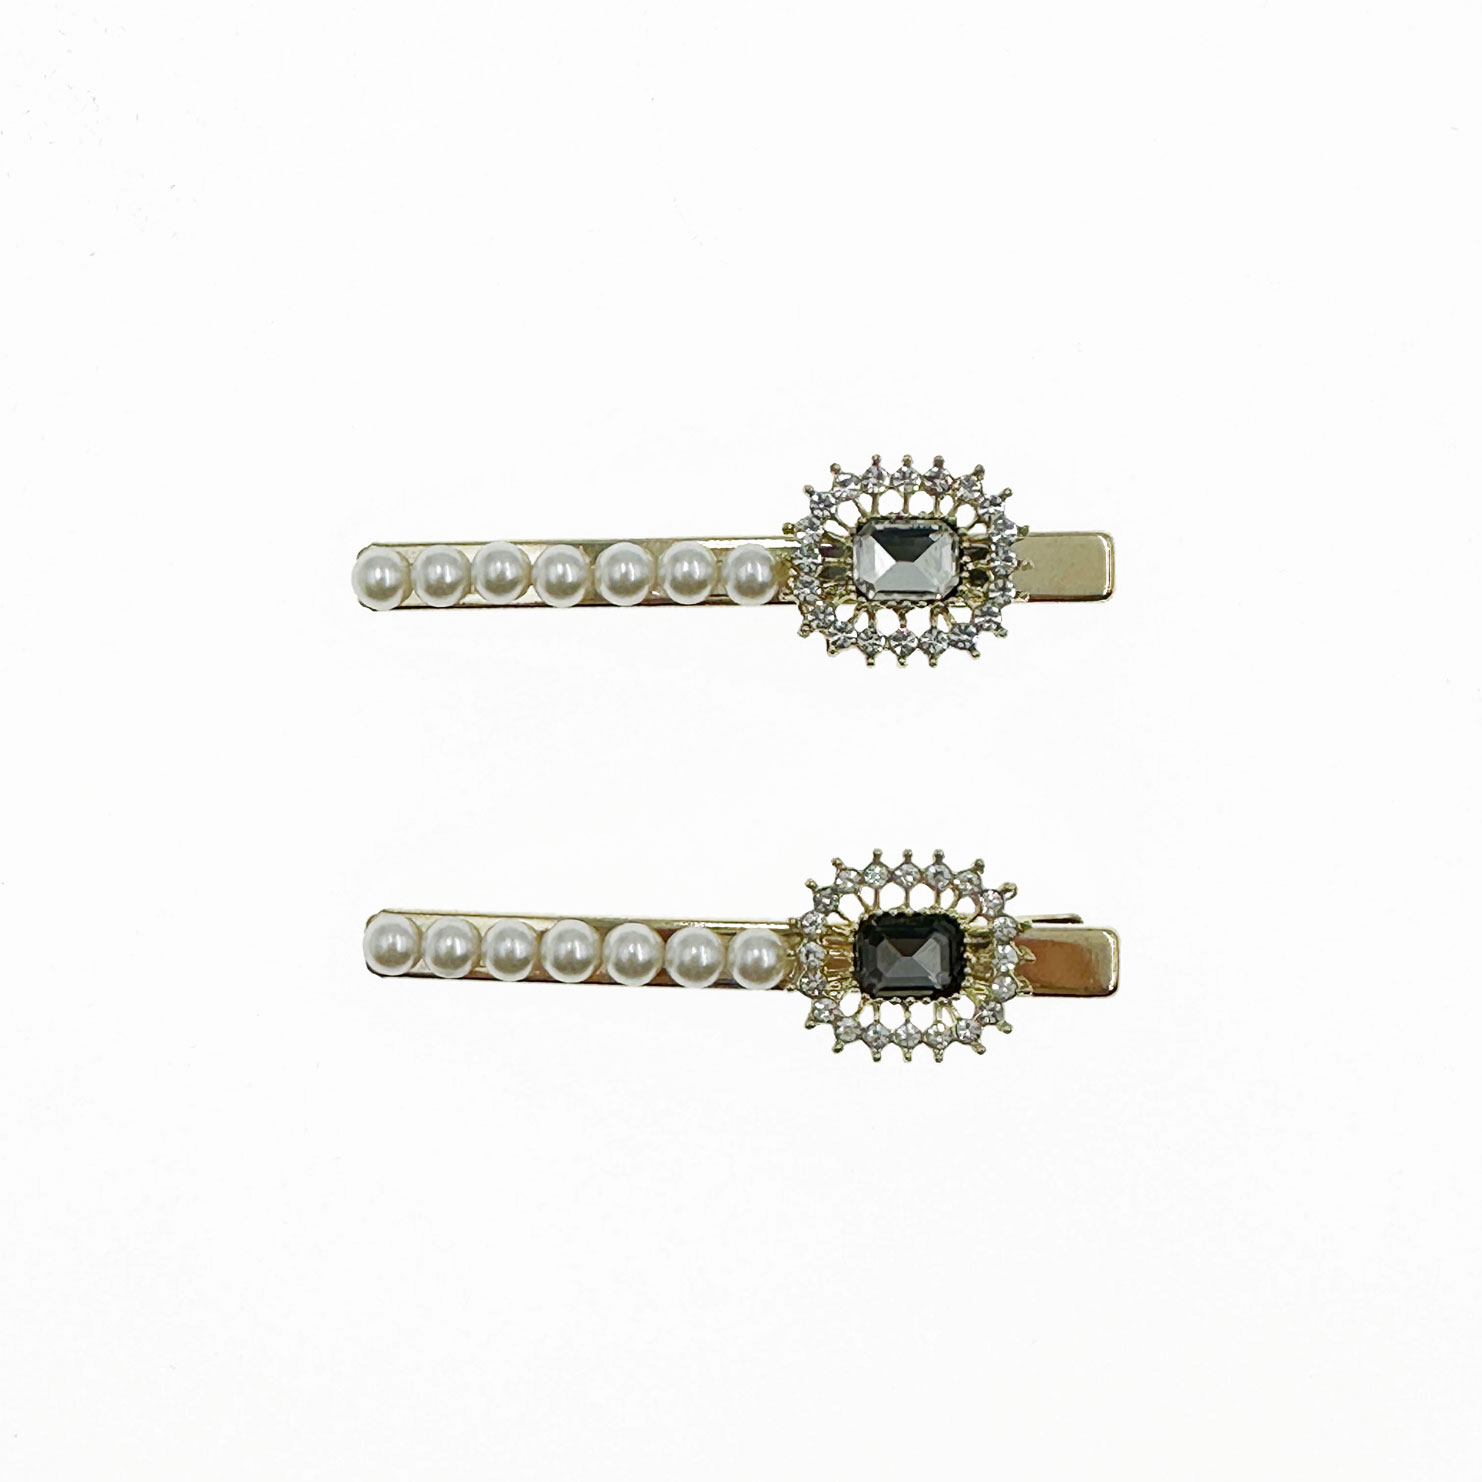 韓國 珍珠 水鑽 方鑽 兩色 壓夾 髮夾 髮飾